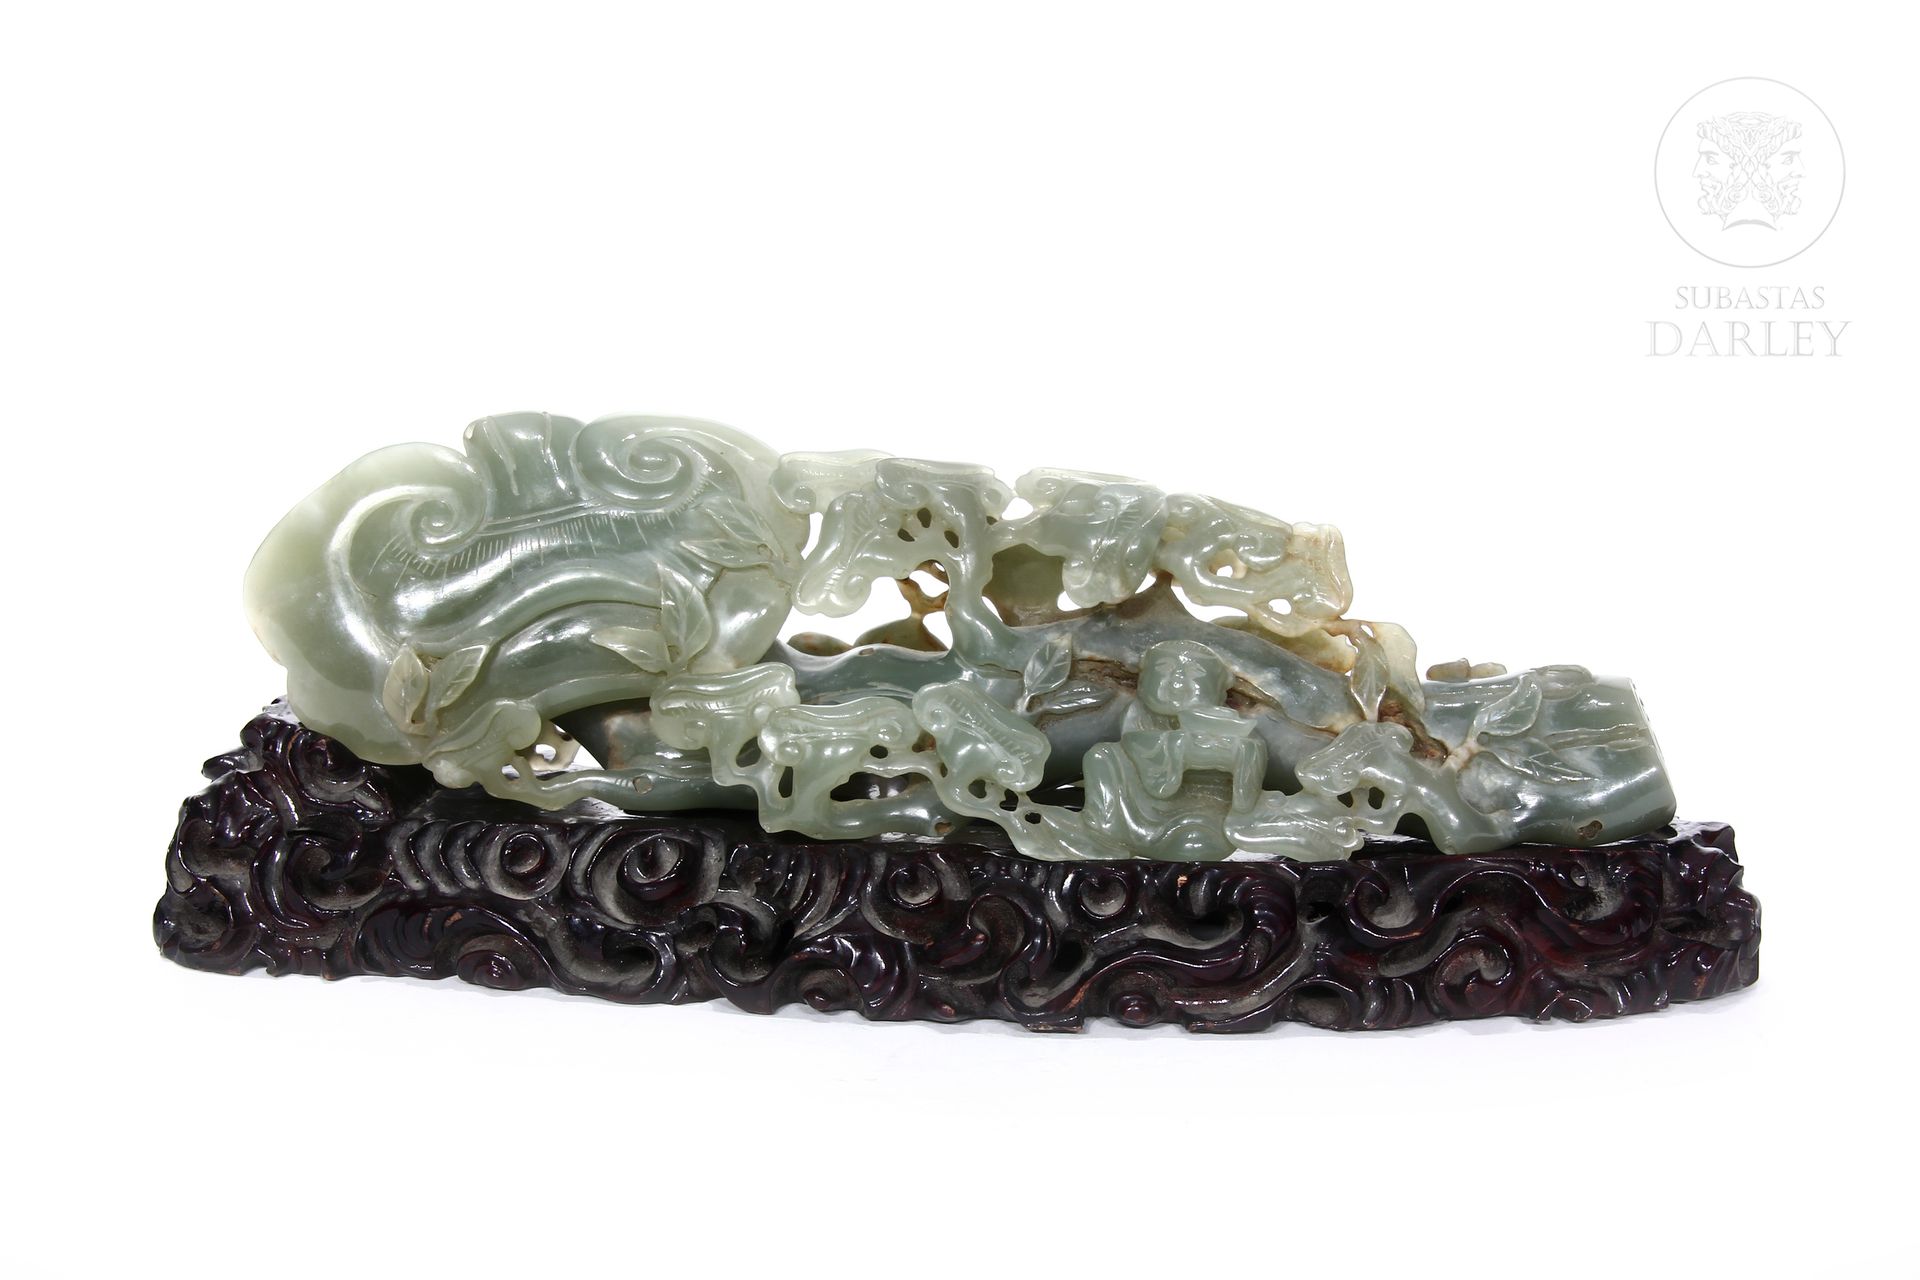 Escultura de jade tallado, s.XX 
Representa personajes y vegetación sobre una pe&hellip;